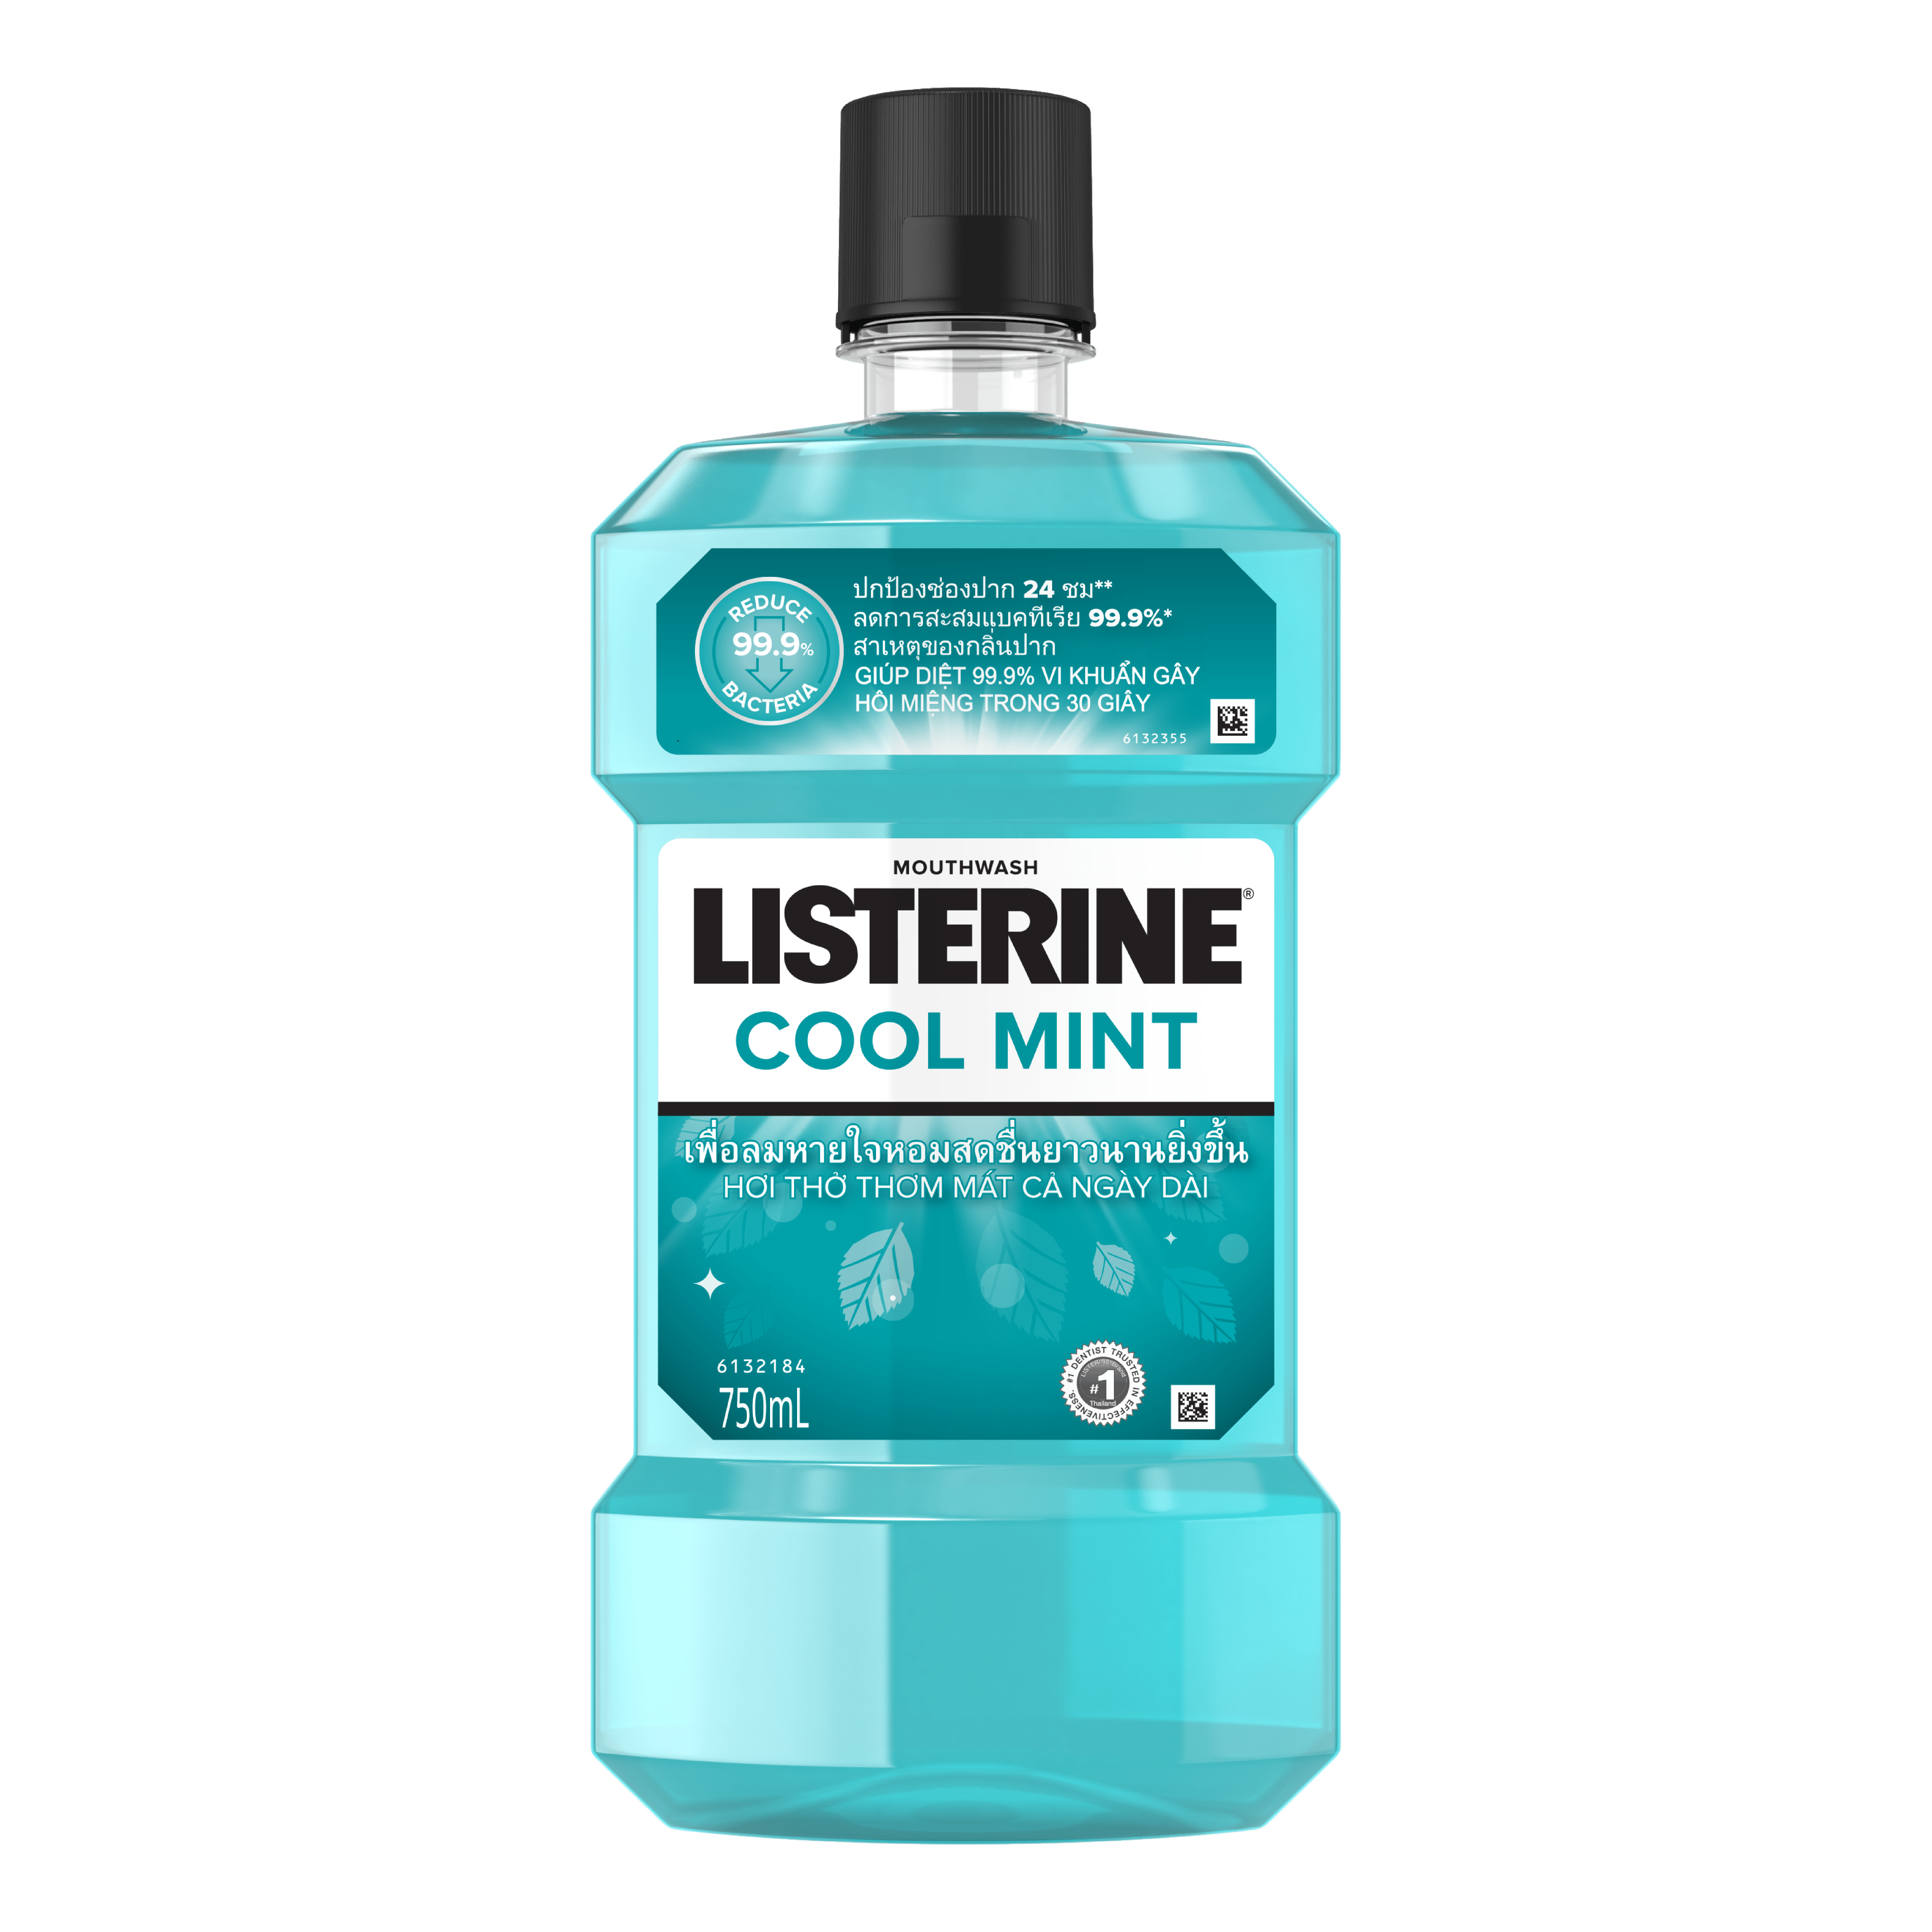 Bộ 2 Nước Súc Miệng Giữ Hơi Thở Thơm Mát Listerine Cool mint - Dung tích 750ml